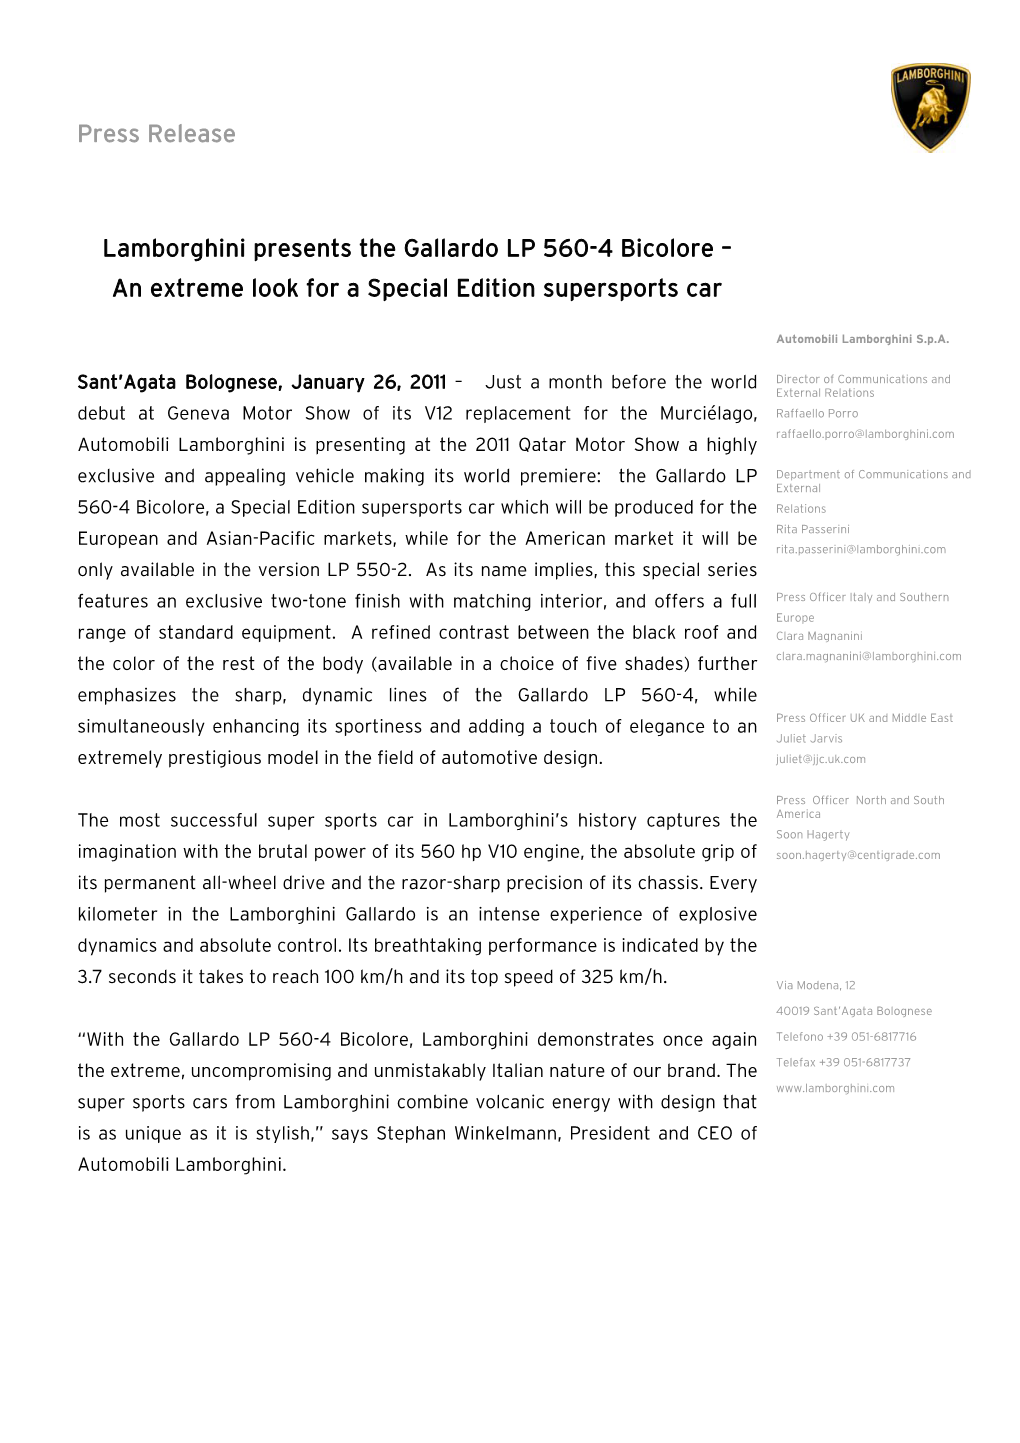 Press Release Lamborghini Presents the Gallardo LP 560-4